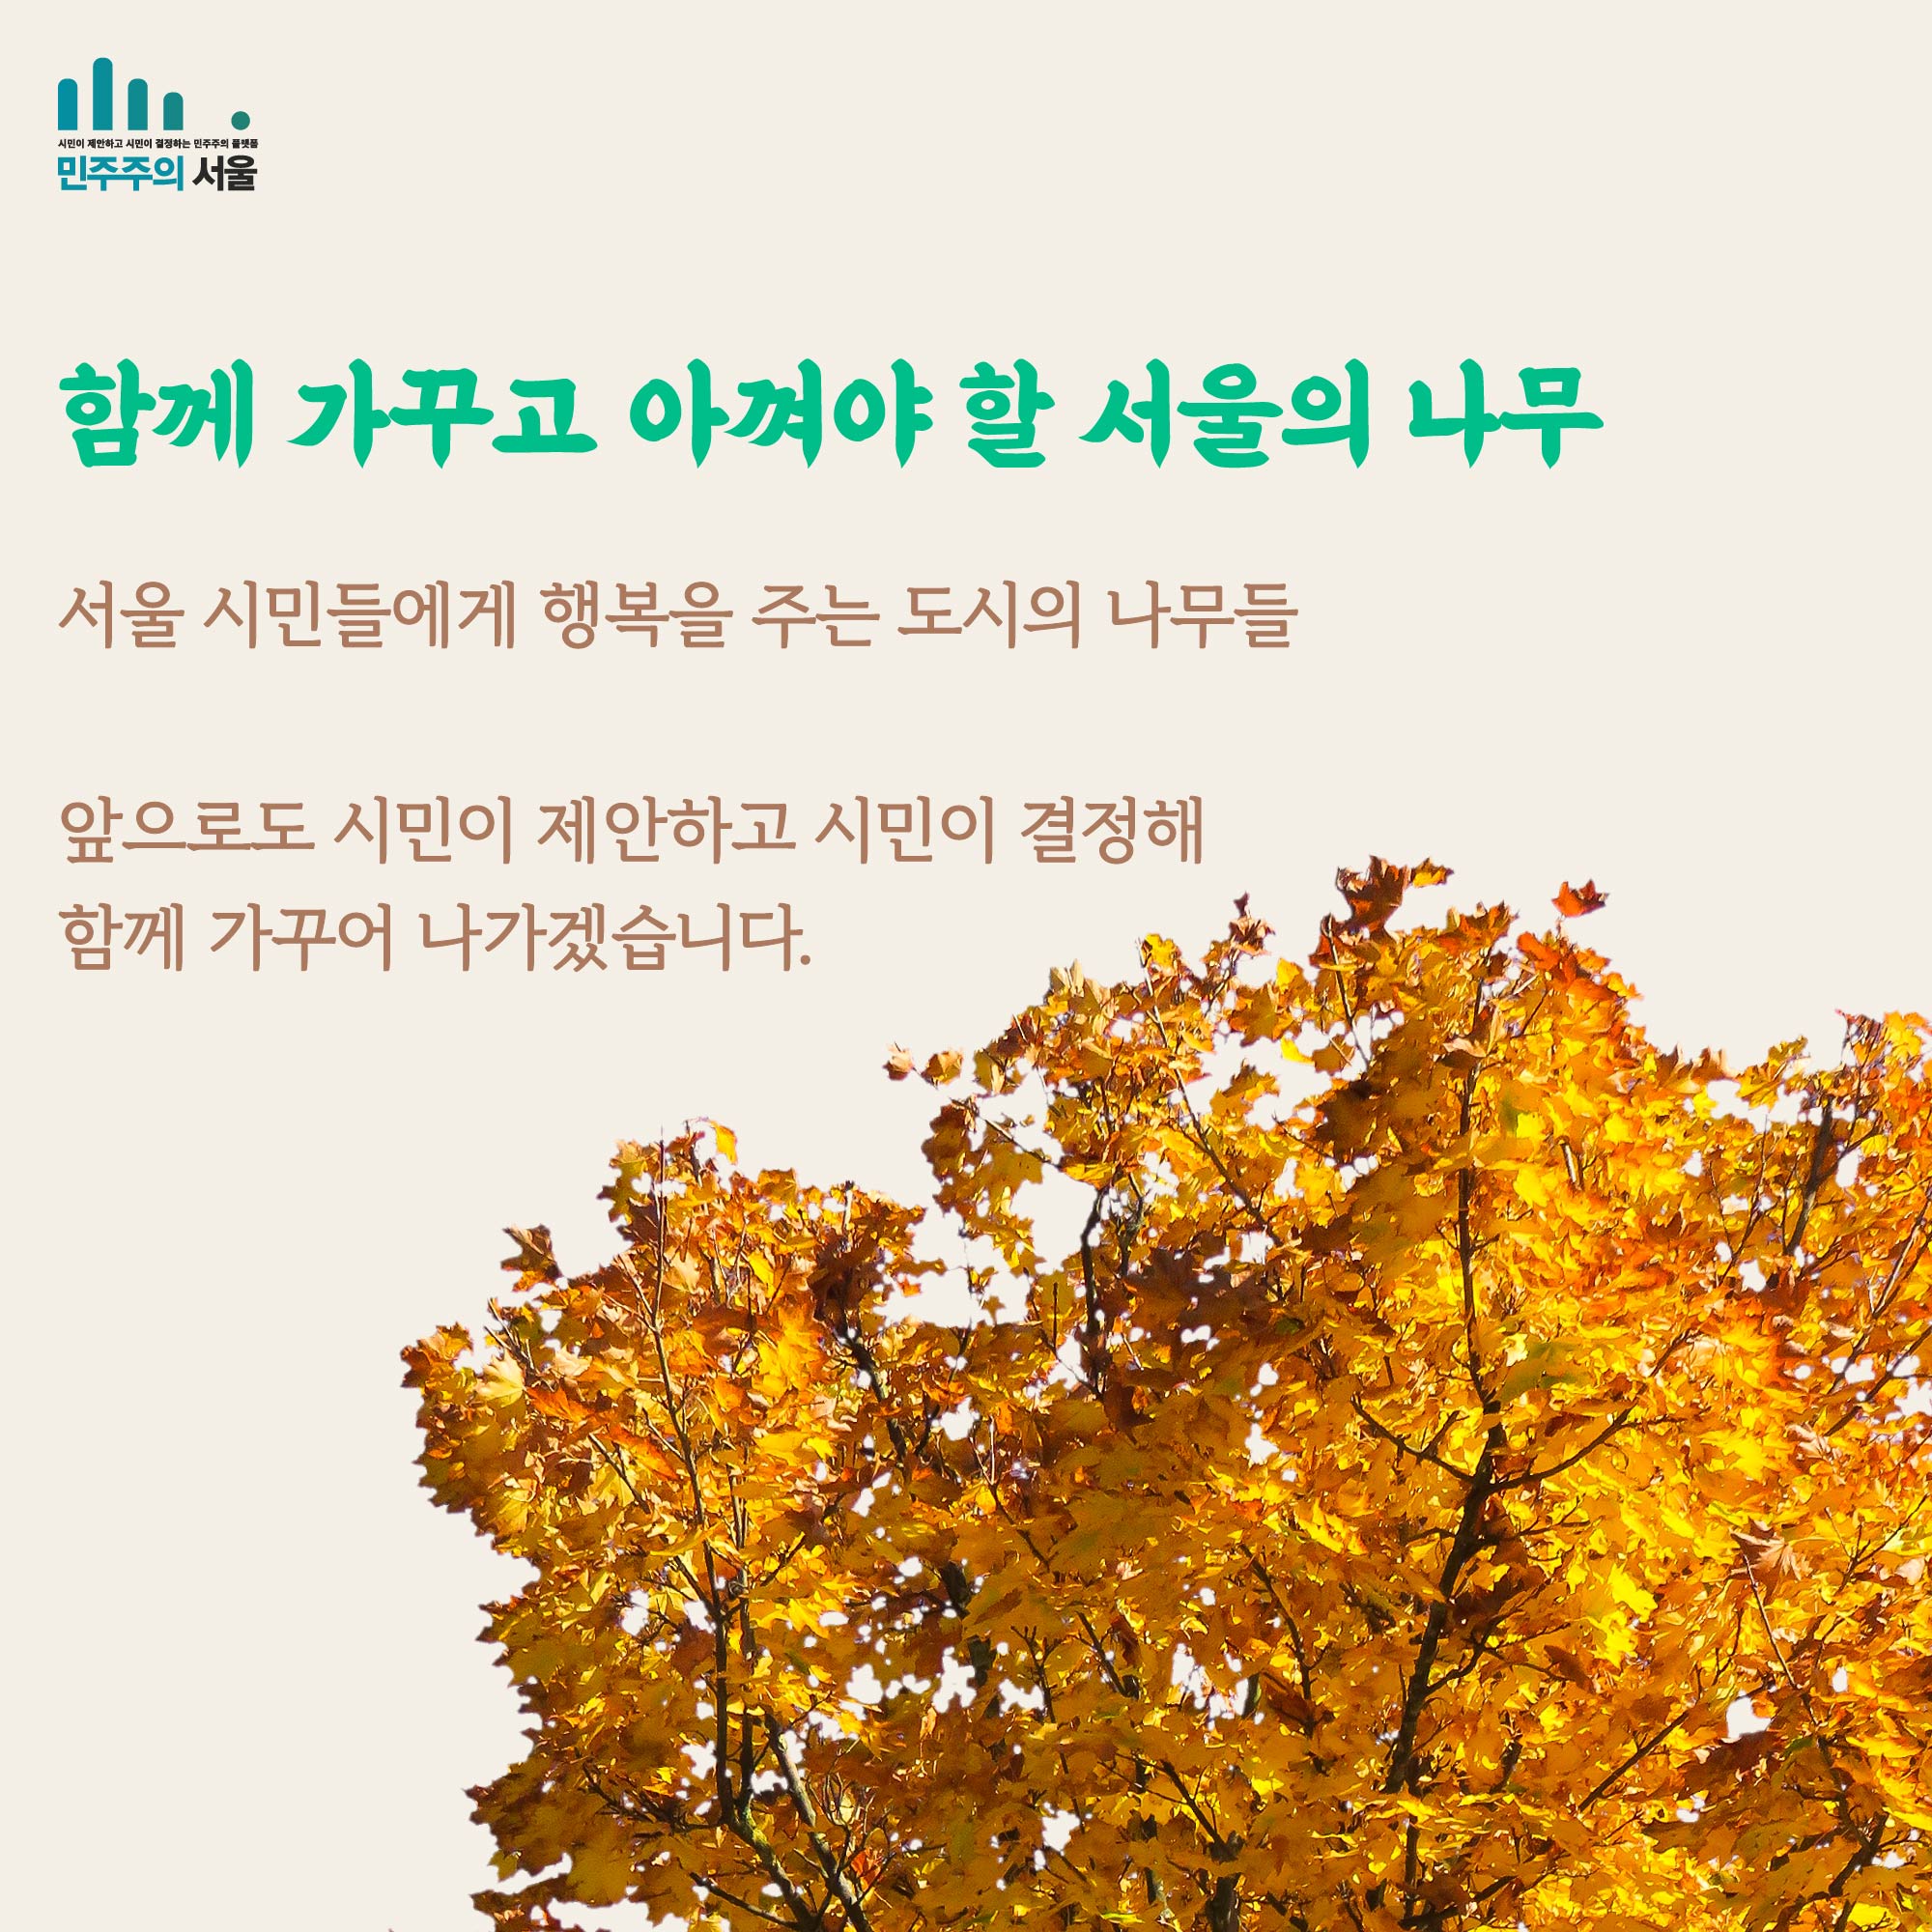 함께 가꾸고 아껴야 할 서울의 나무 서울 시민들에게 행복을 주는 도시의 나무들 앞으로도 시민이 제안하고 시민이 결정해 함께 가꾸어 나가겠습니다.